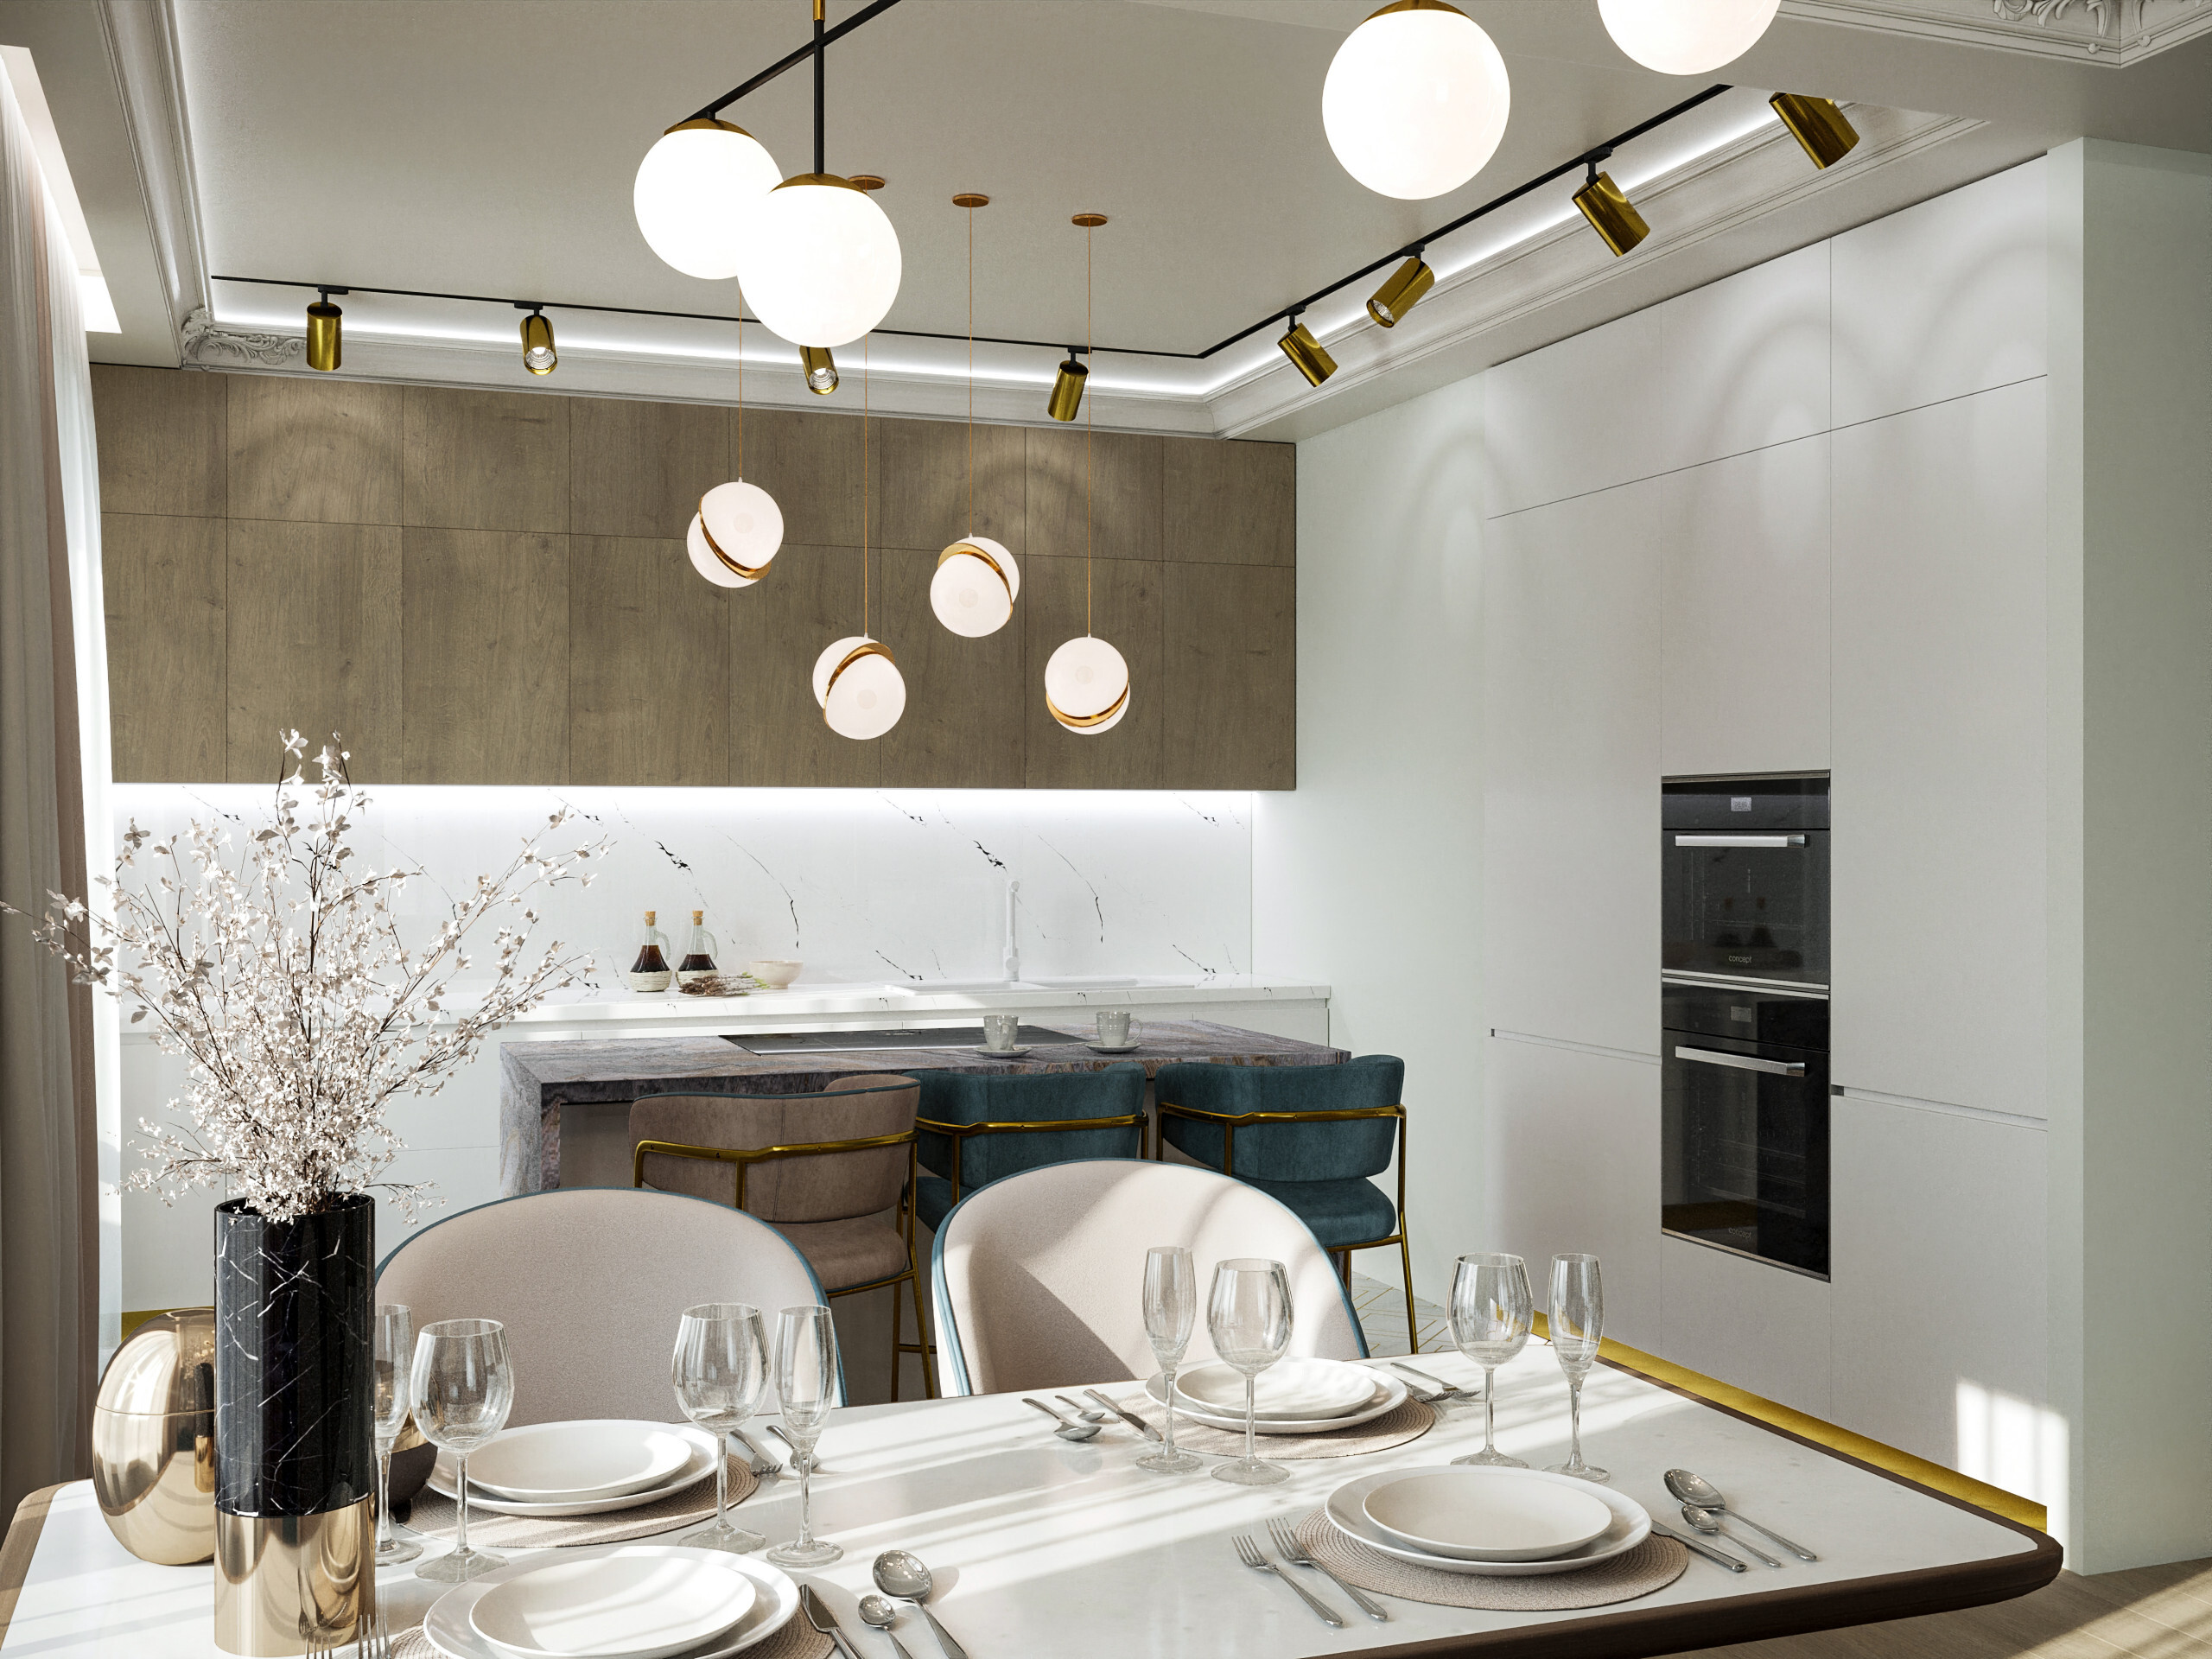 Интерьер кухни cветовыми линиями, светильниками над столом и подсветкой светодиодной в неоклассике